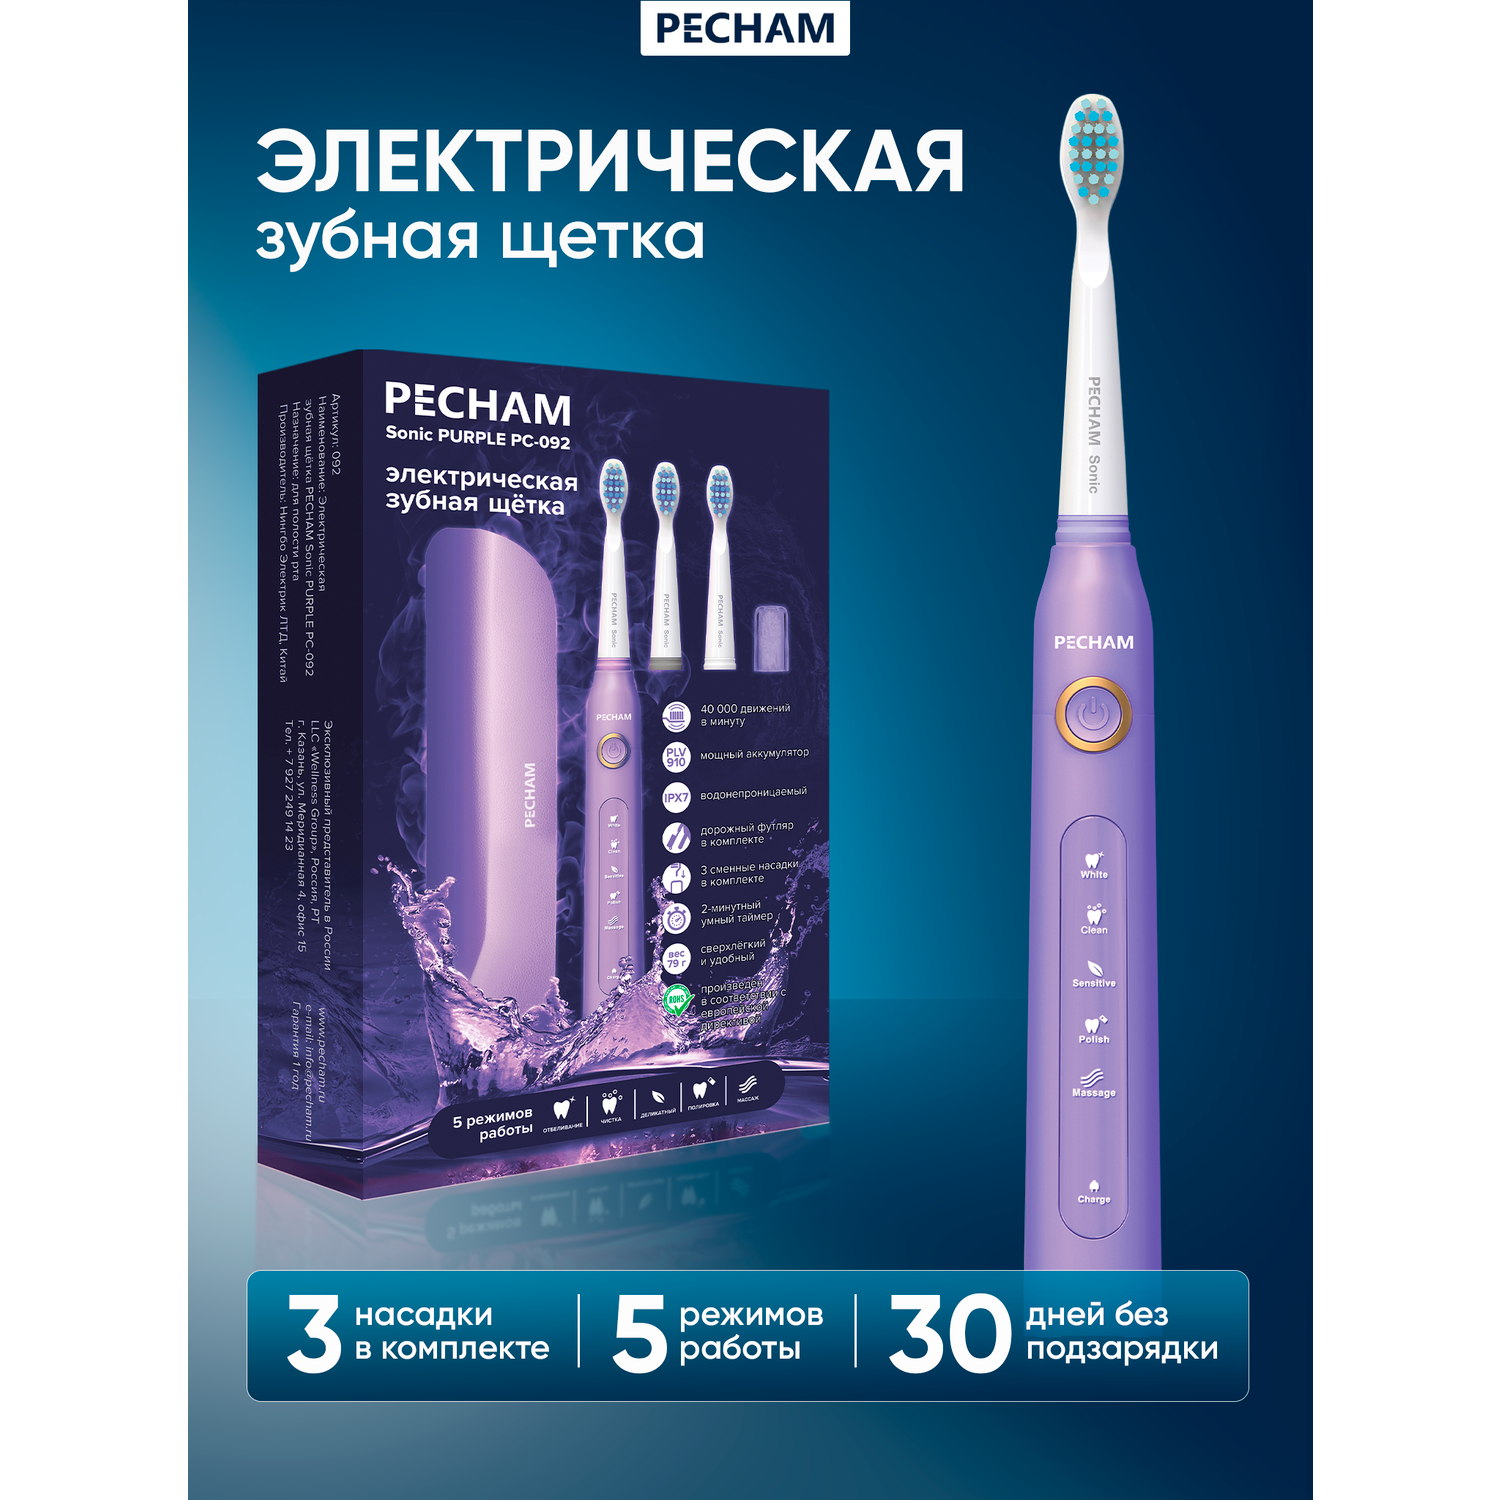 Электрическая зубная щетка PECHAM Sonic Purple - фото 1